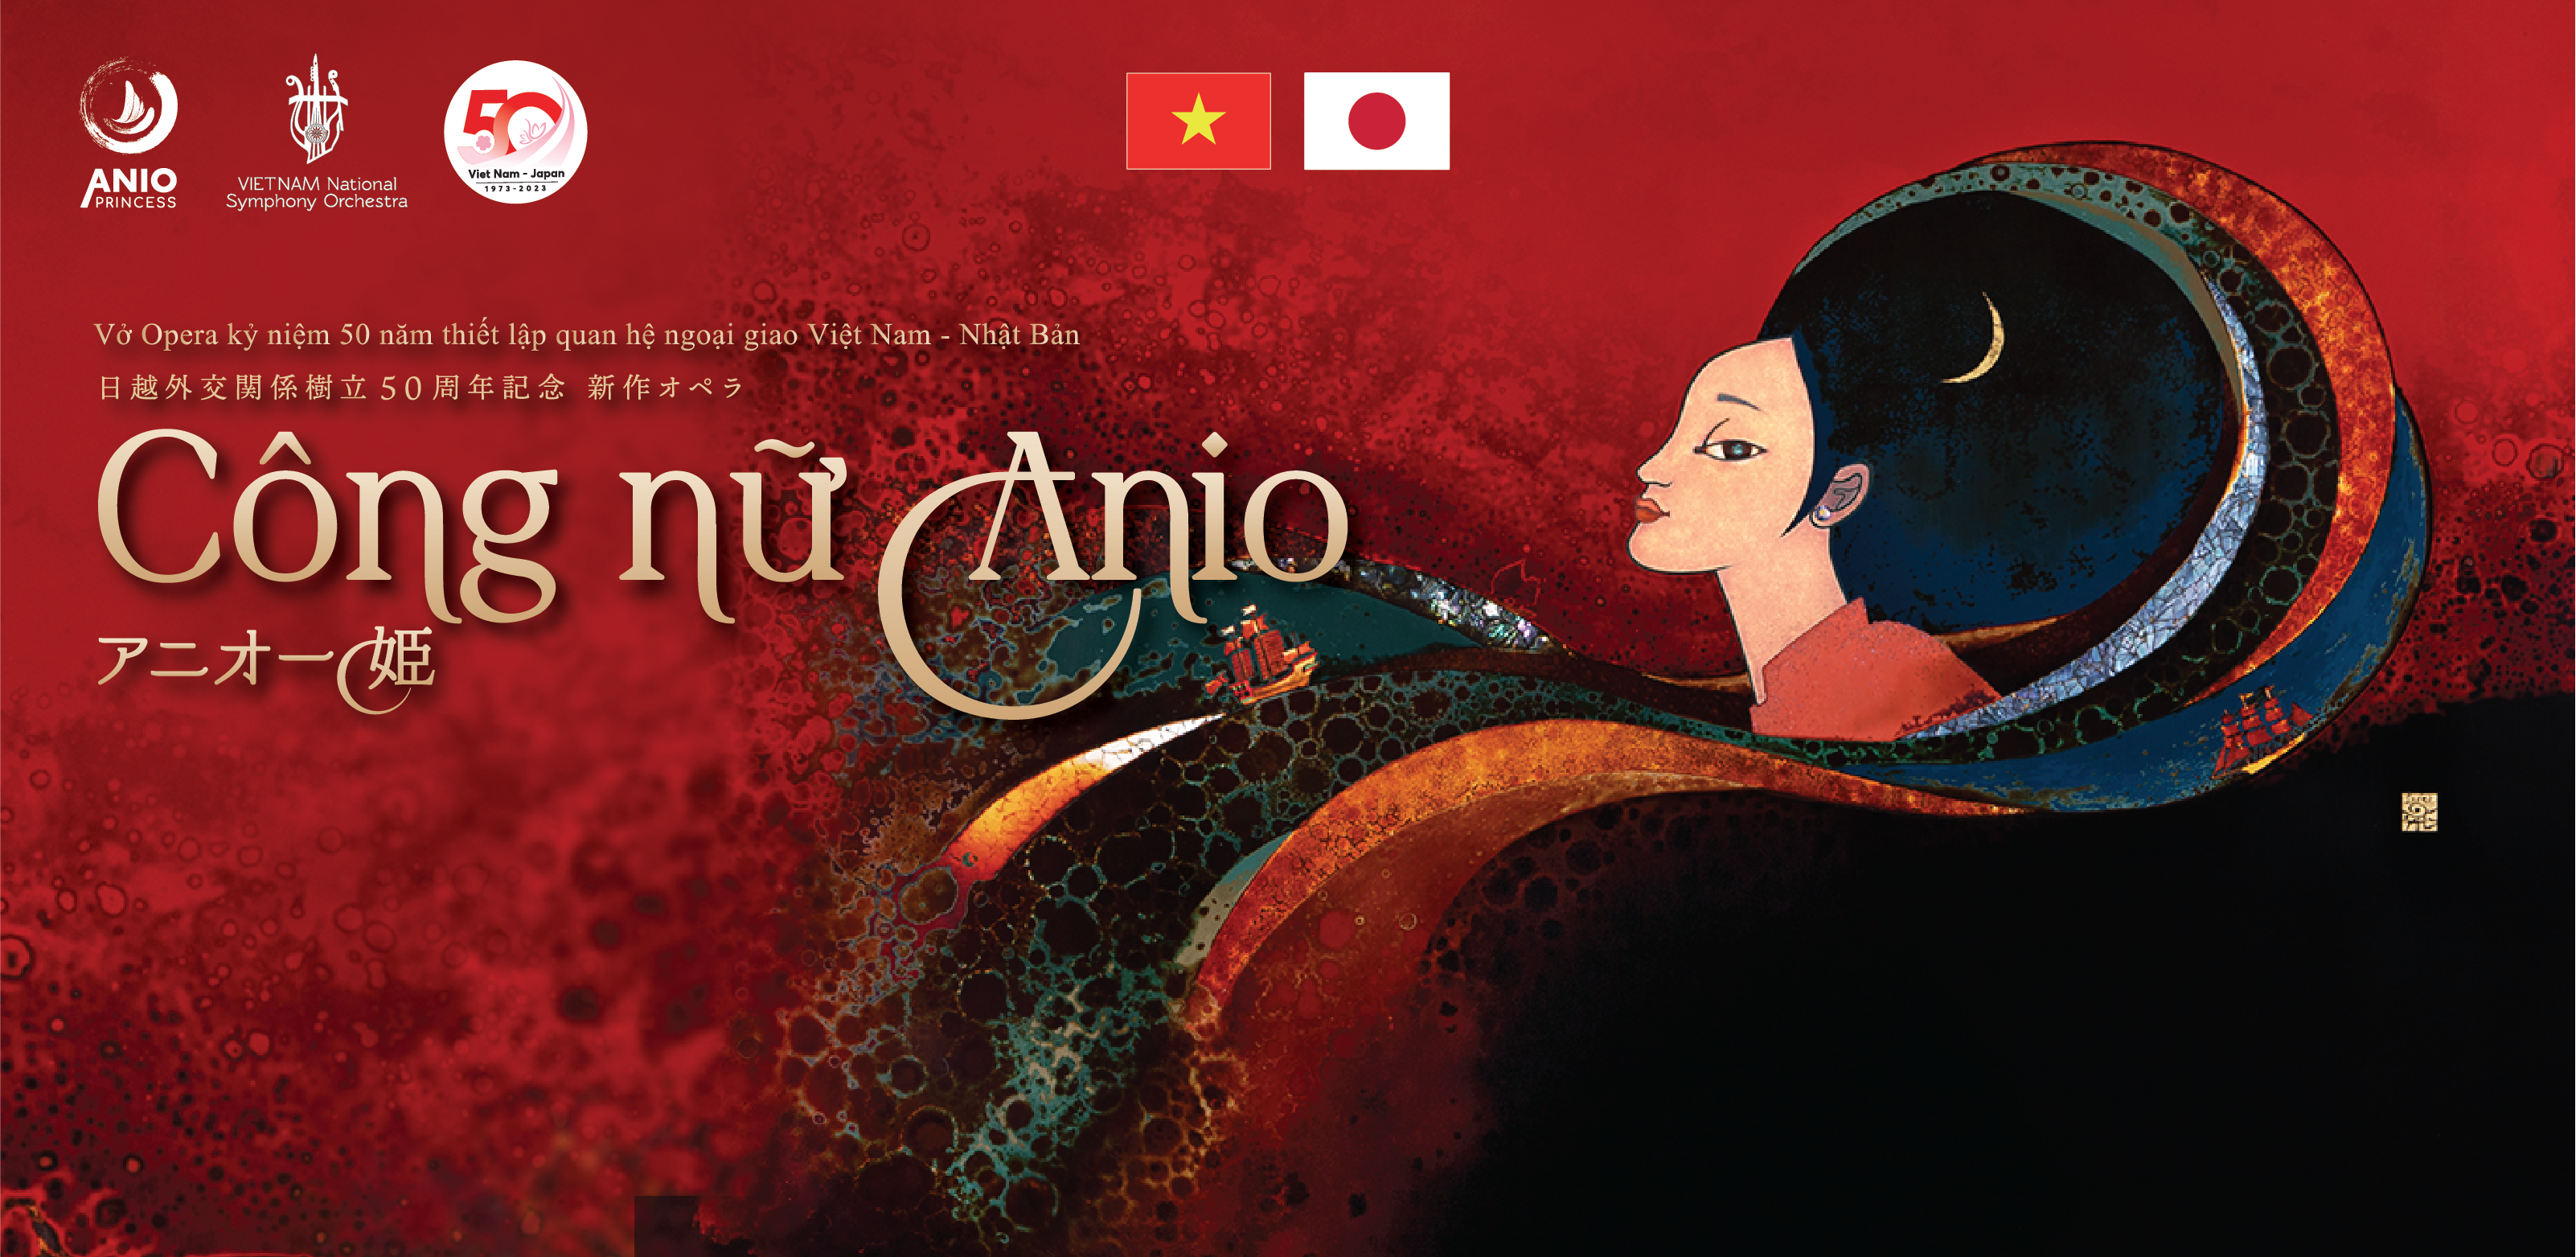 Buổi công diễn vở Opera “Công nữ Anio” tại Việt Nam nhận được sự hưởng ứng nhiệt tình của khán thính giả